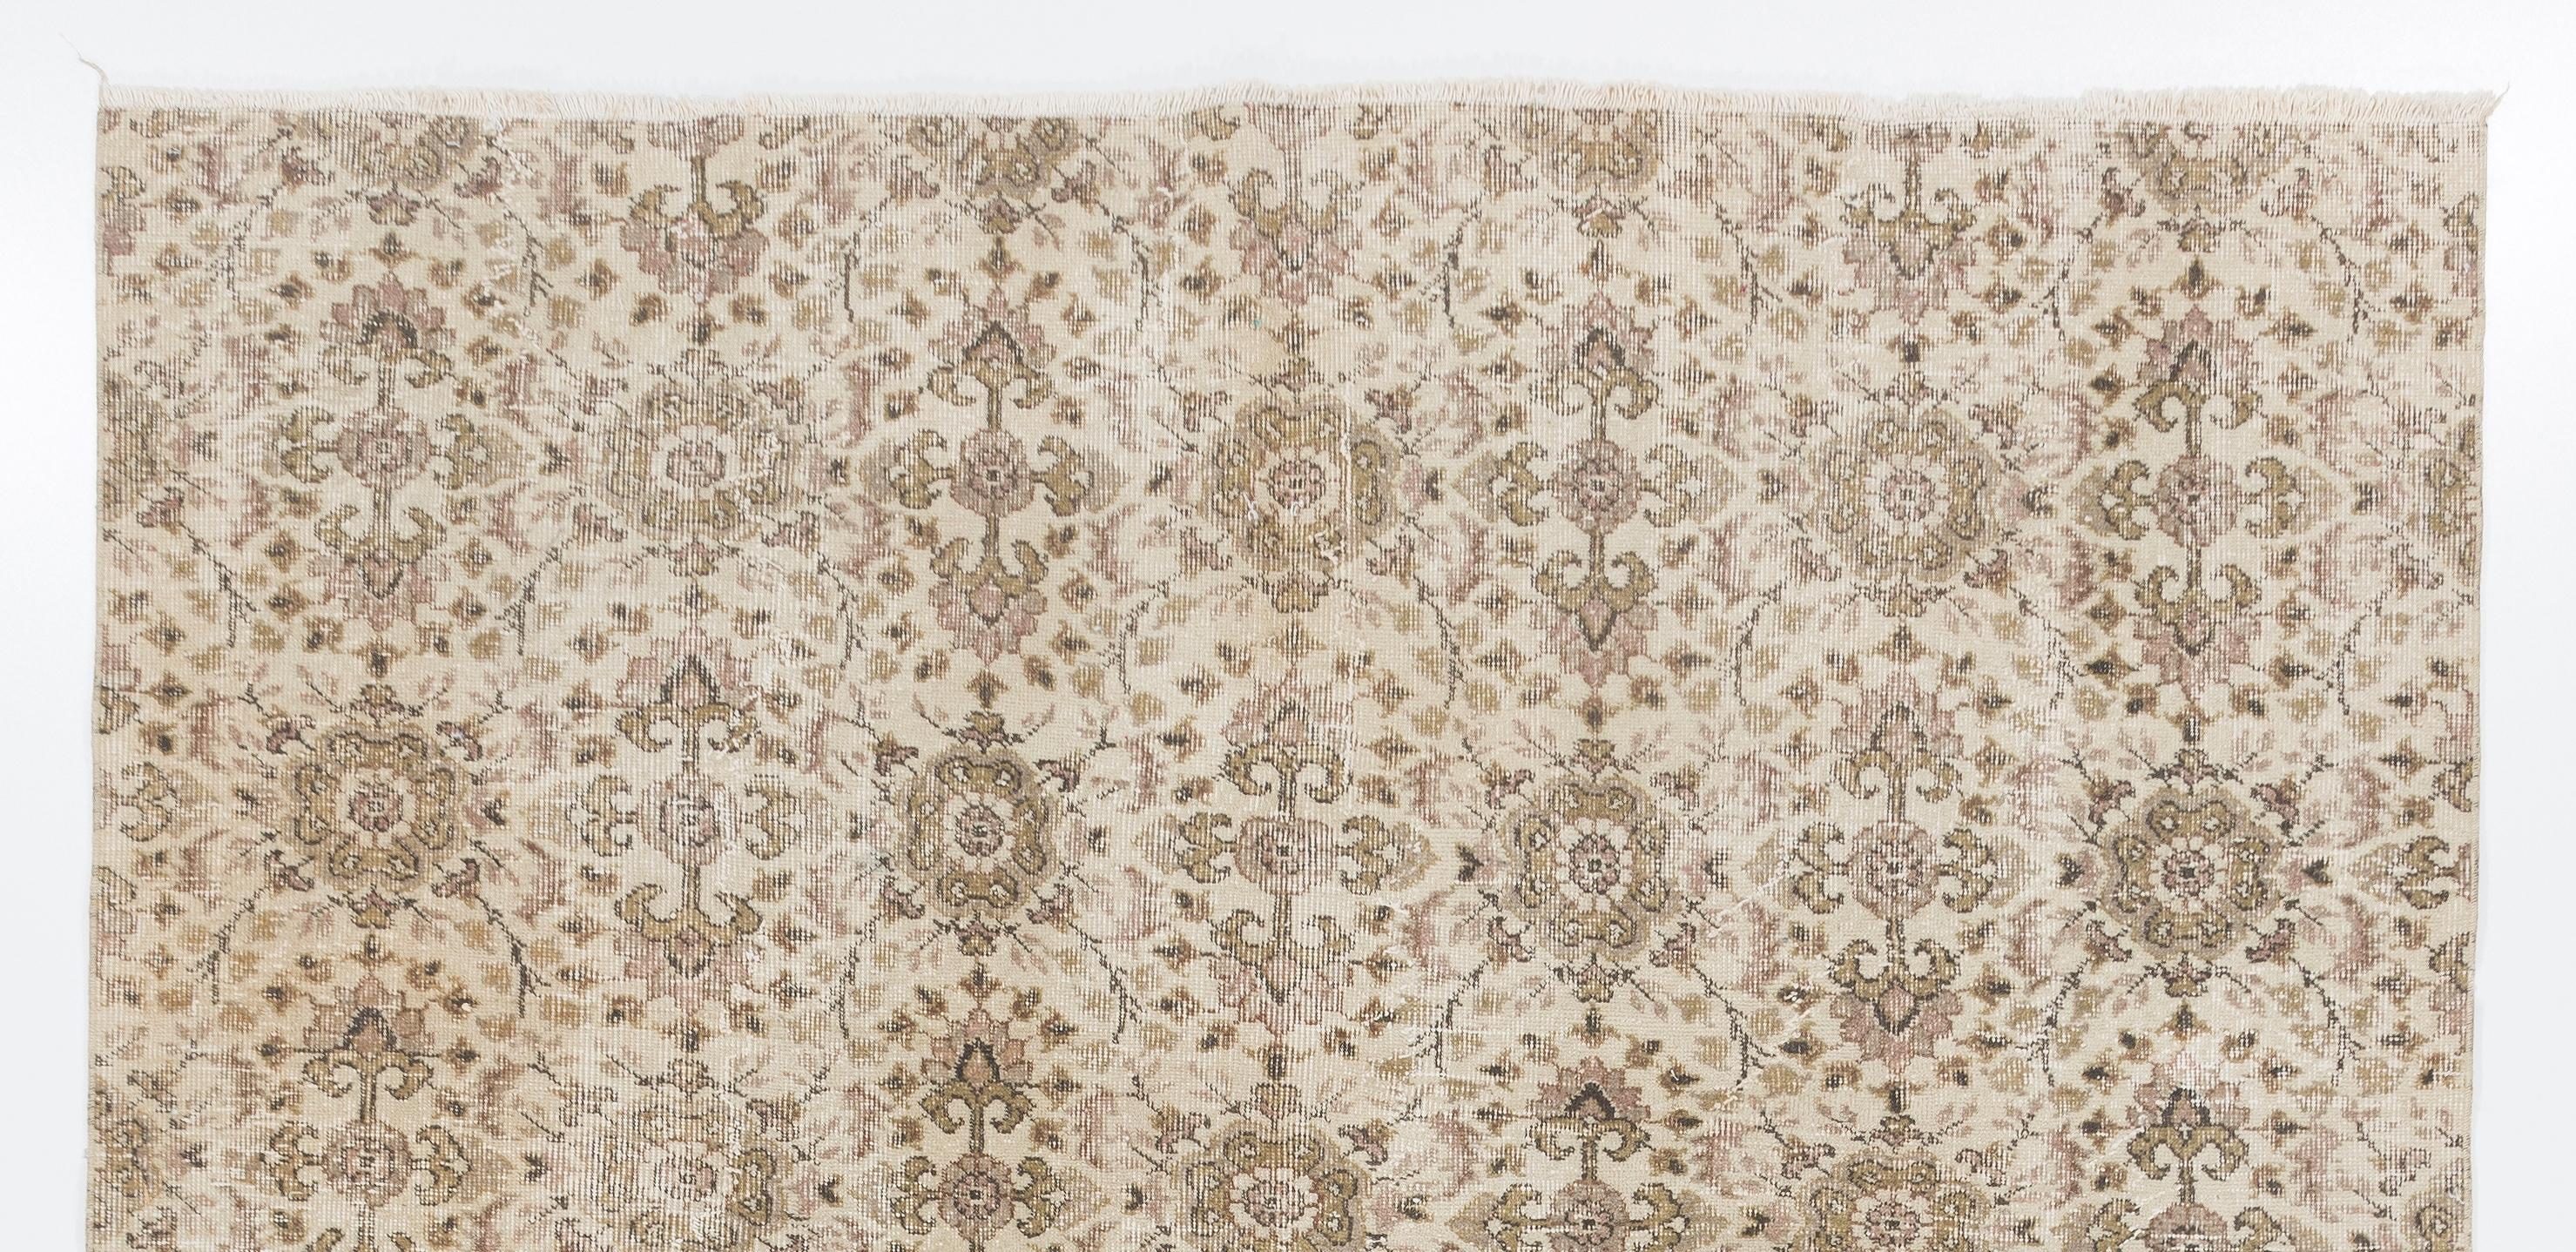 Ce tapis turc vintage. Il a été noué à la main dans les années 1960 et présente un motif floral sur toute sa surface. Poil ras en laine sur une base en coton finement tissé. Robuste et pouvant être utilisé sur une zone à fort trafic, il convient aux